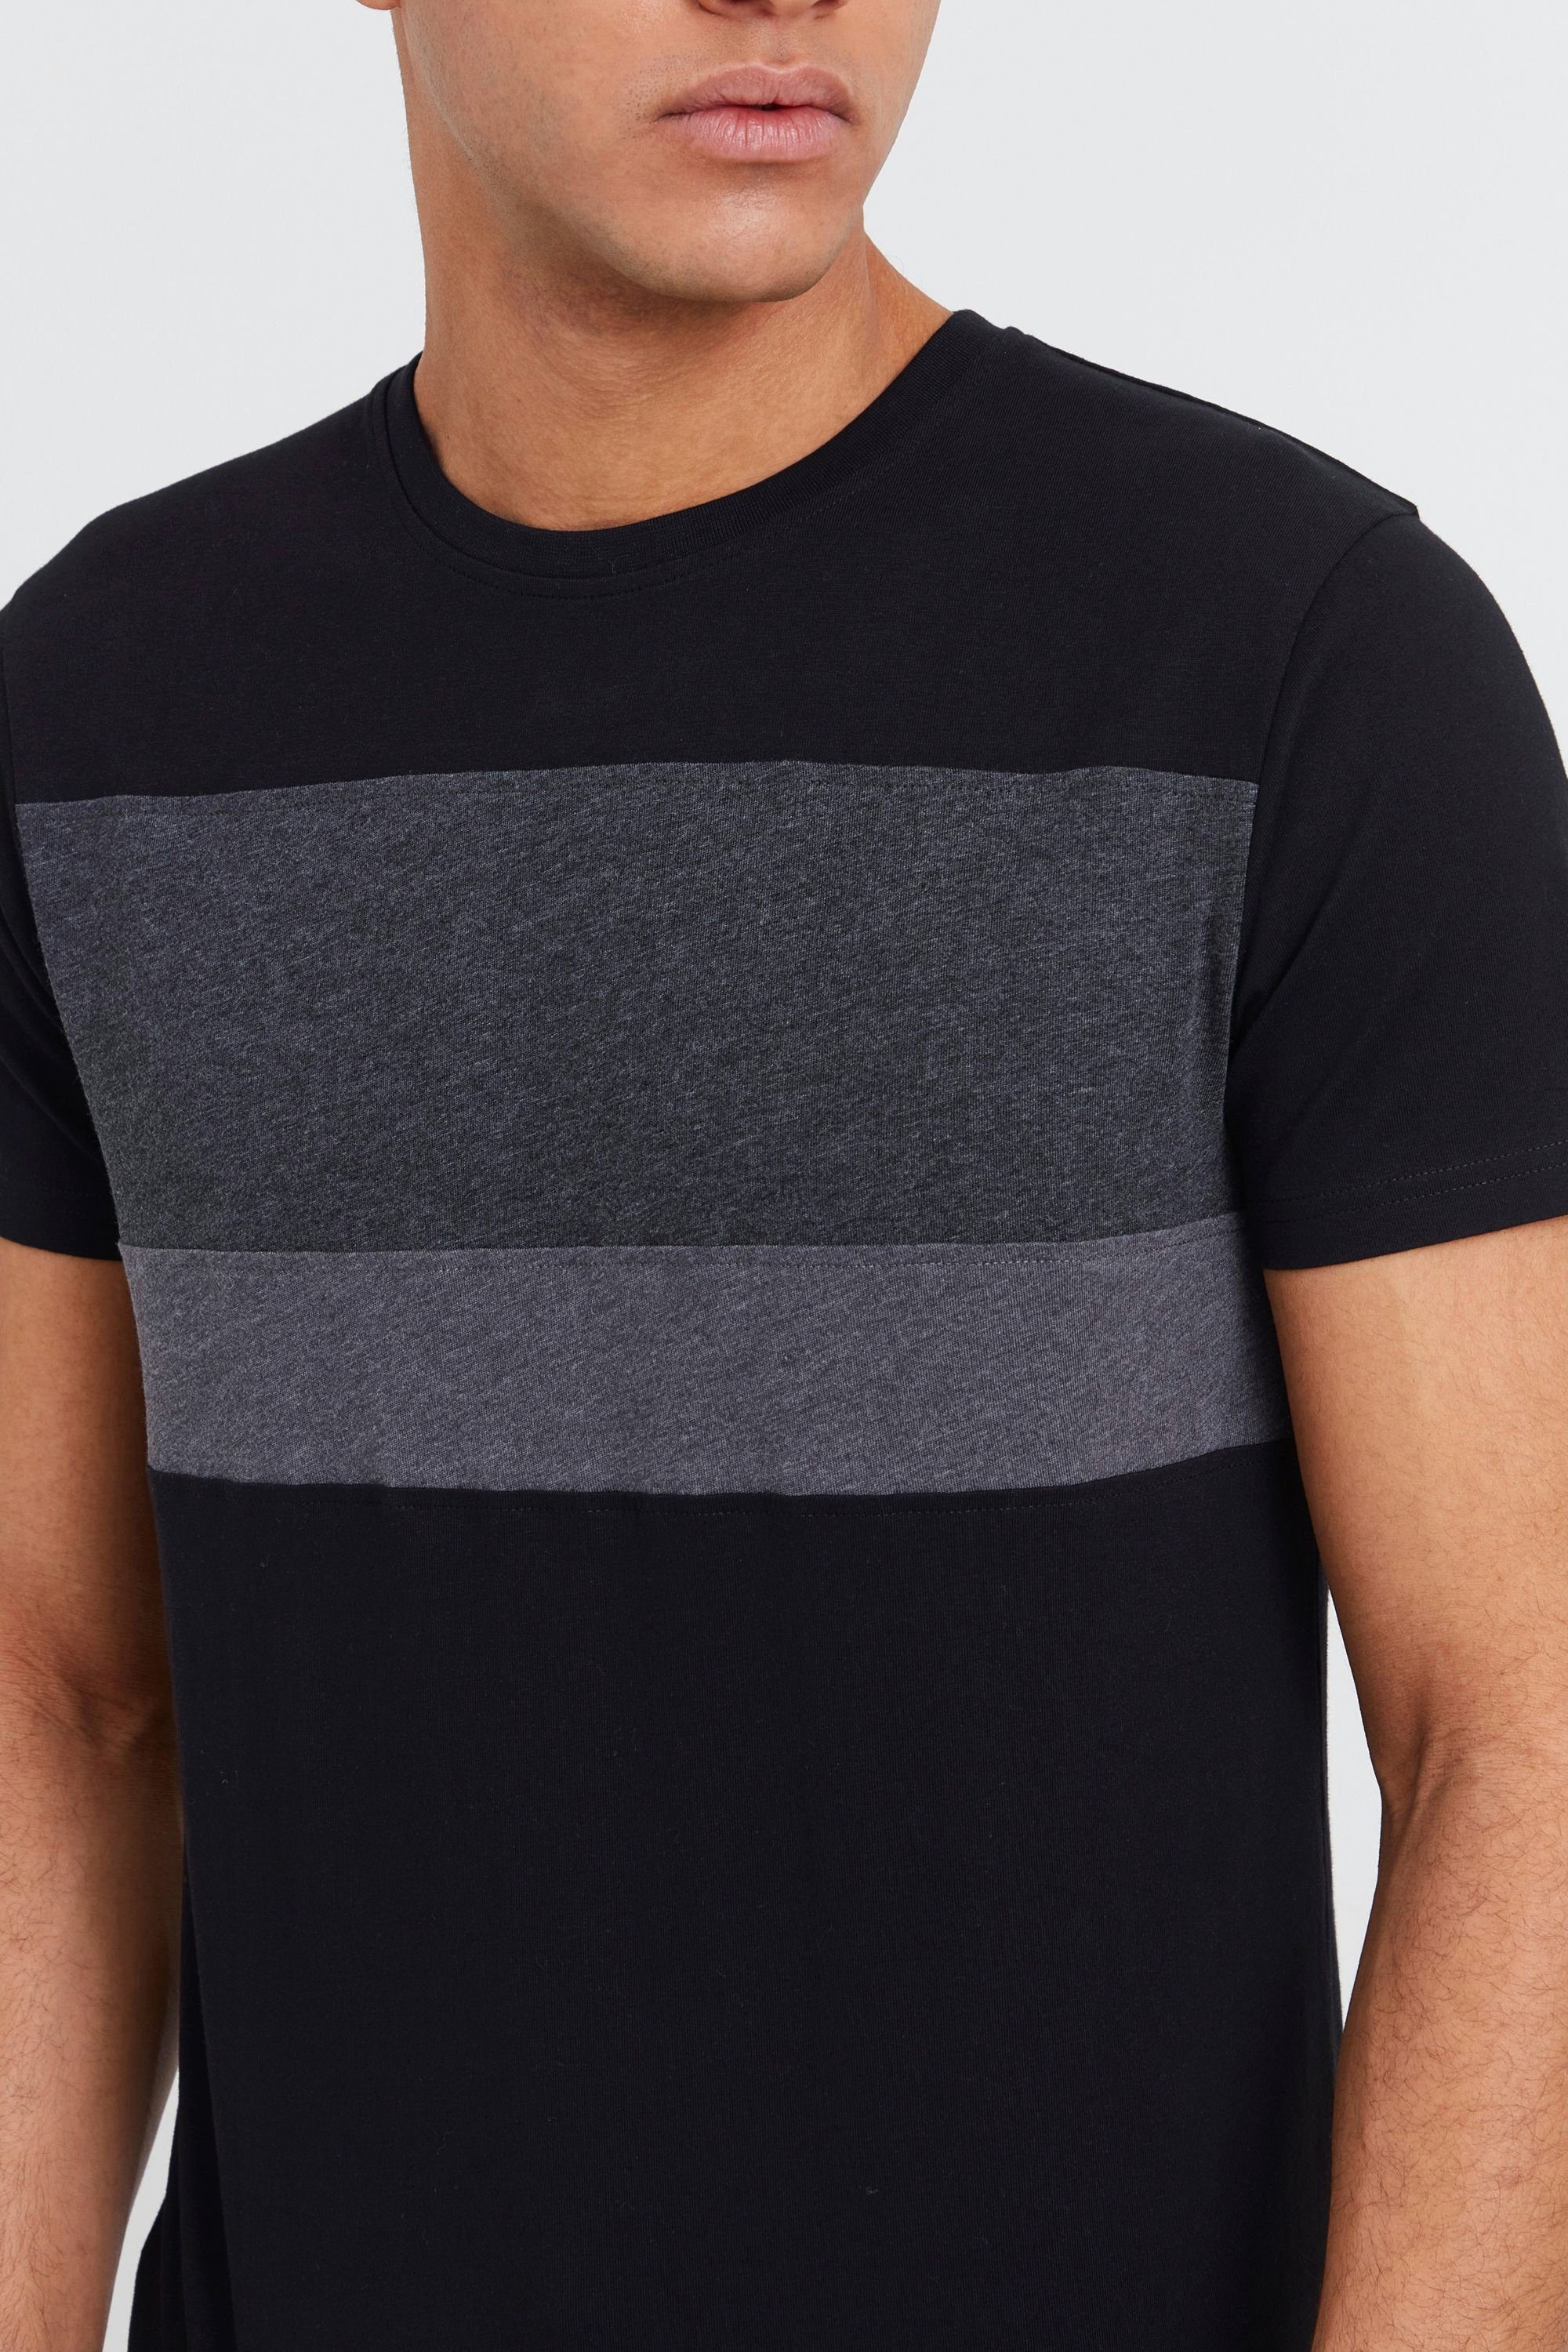 Tricolor !Solid SDSascha (9000) in Rundhalsshirt Streifenoptik T-Shirt Black